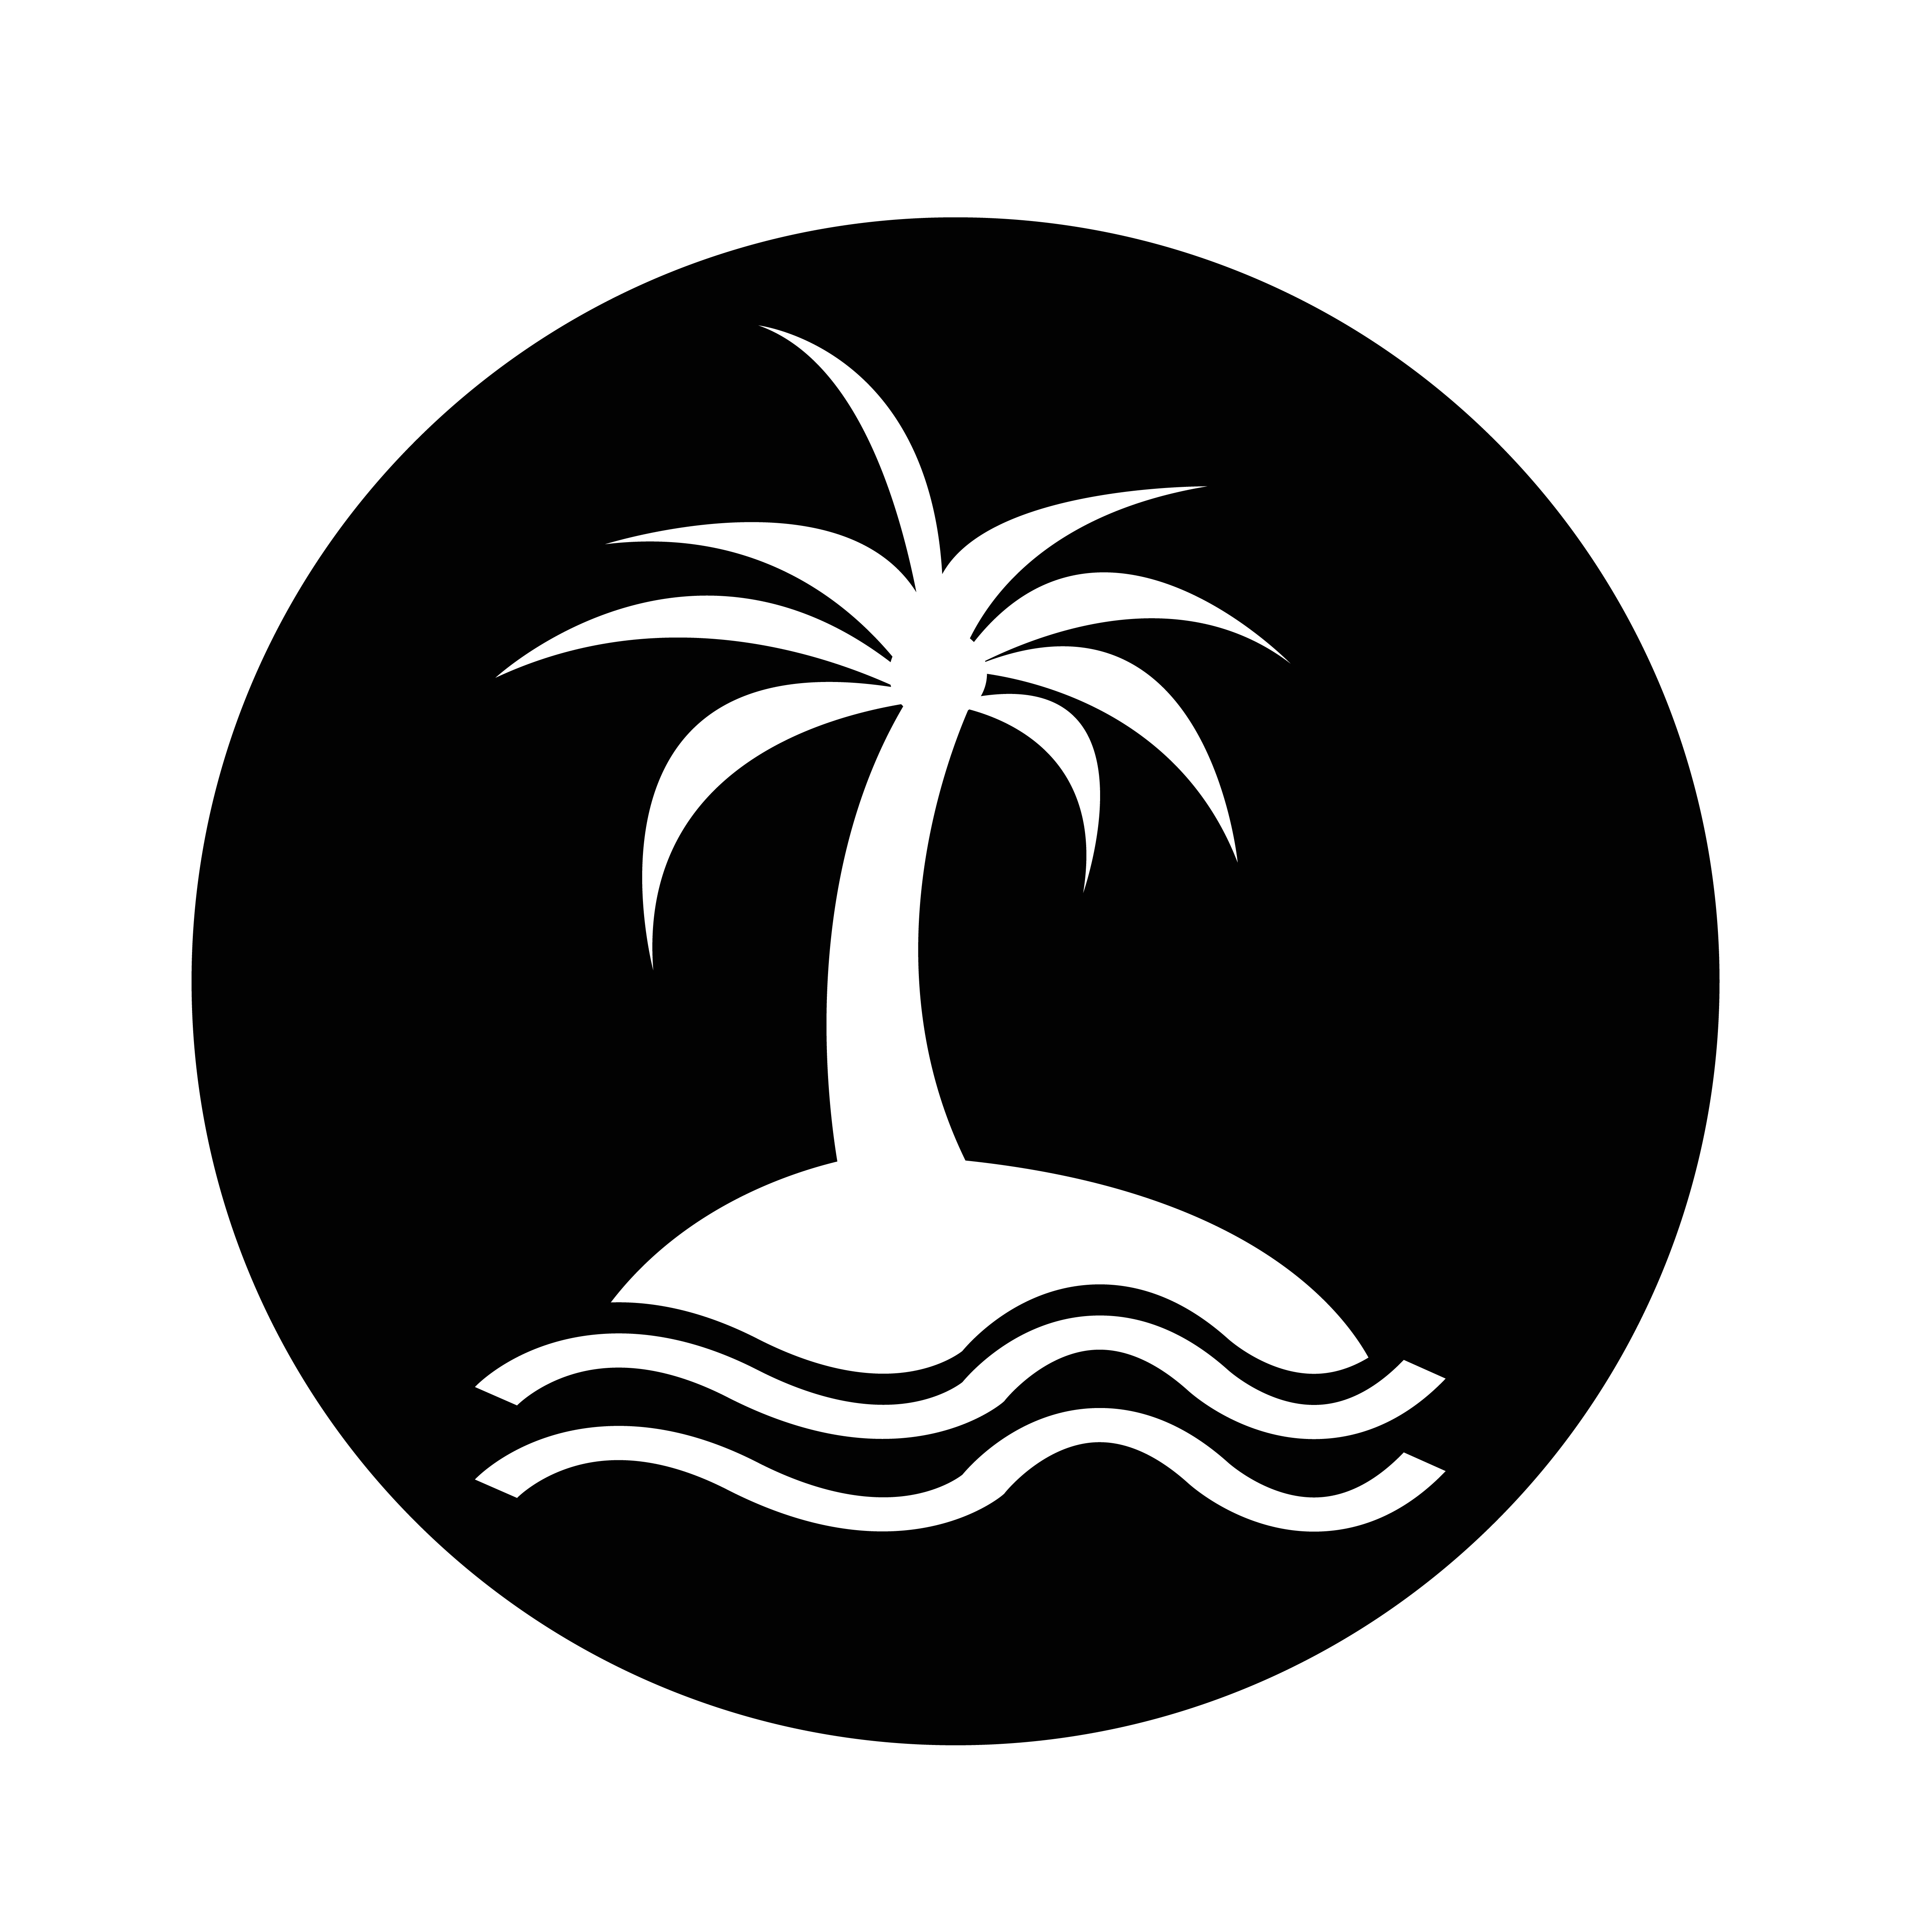 Island значок. Значок острова. Пиктограмма остров. Остров и Пальма значок. Иконка острова с пальмой.